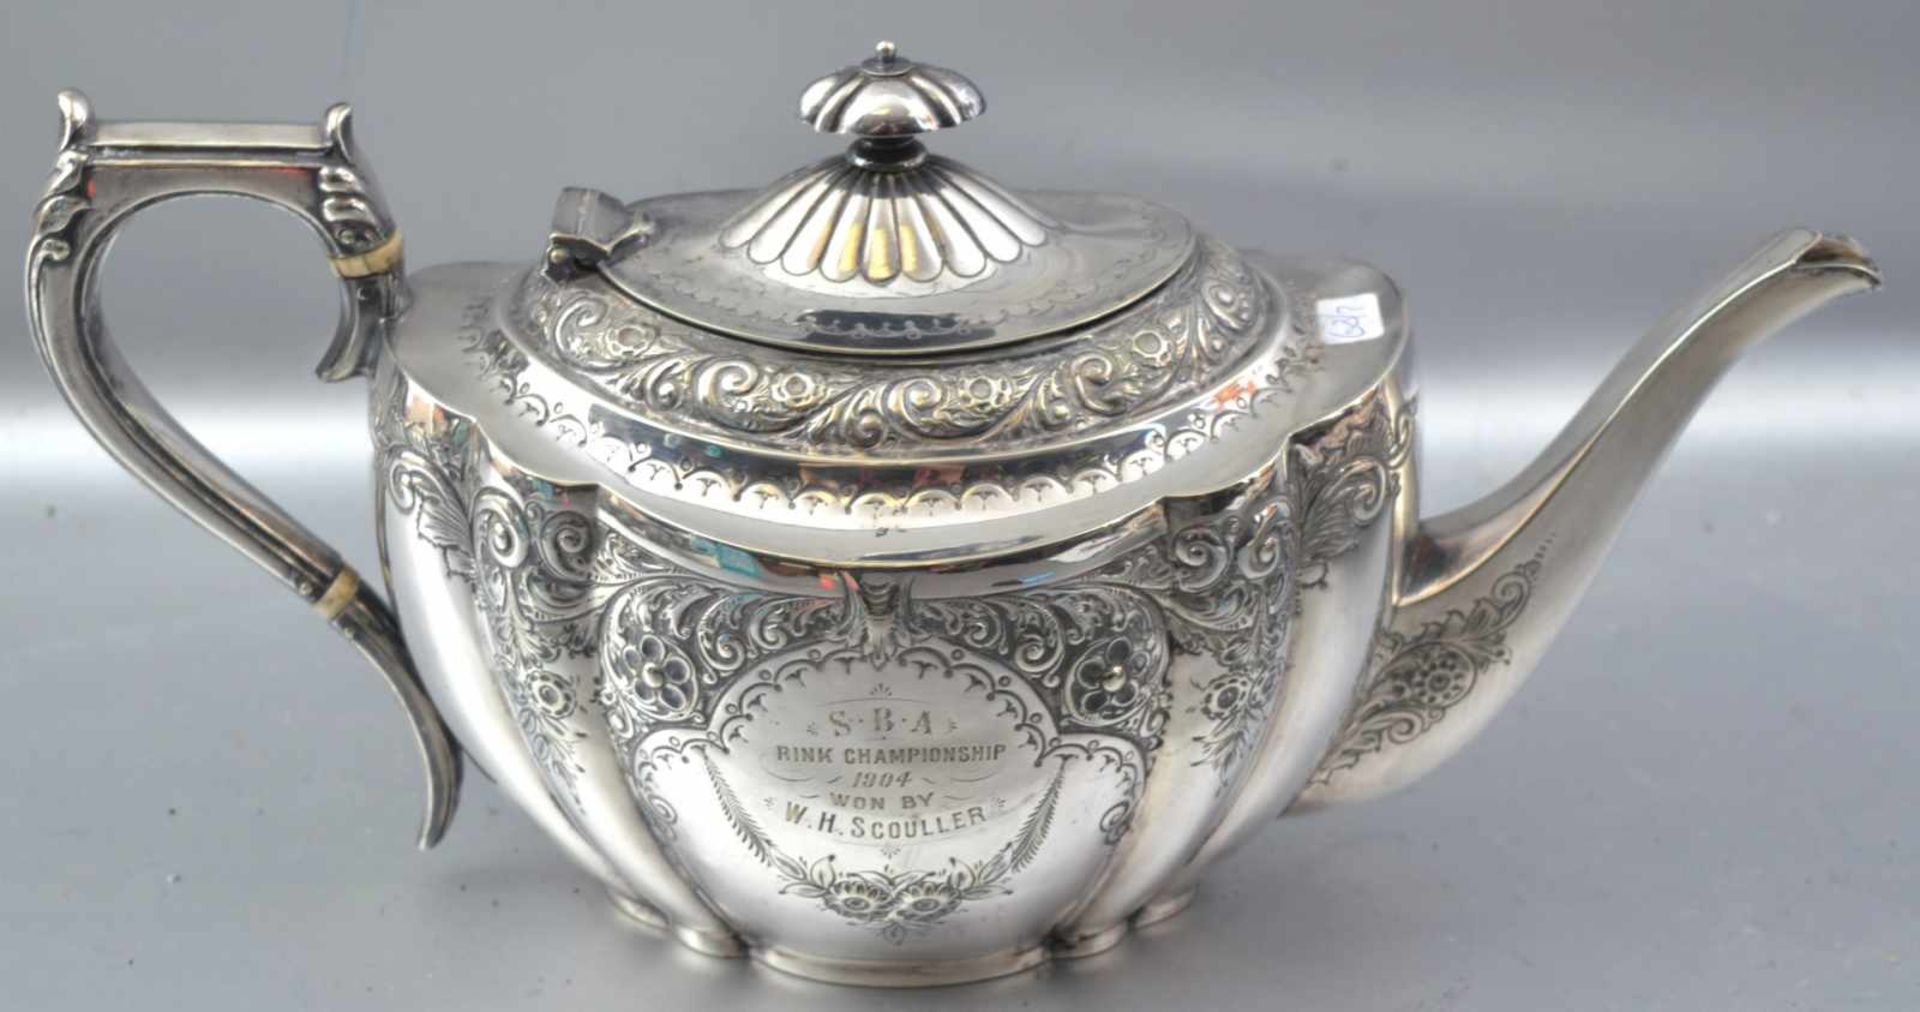 Teekanne oval, Wandung mit Ranken und Ornamenten verziert, mit Widmung, dat. 1904, verzierter